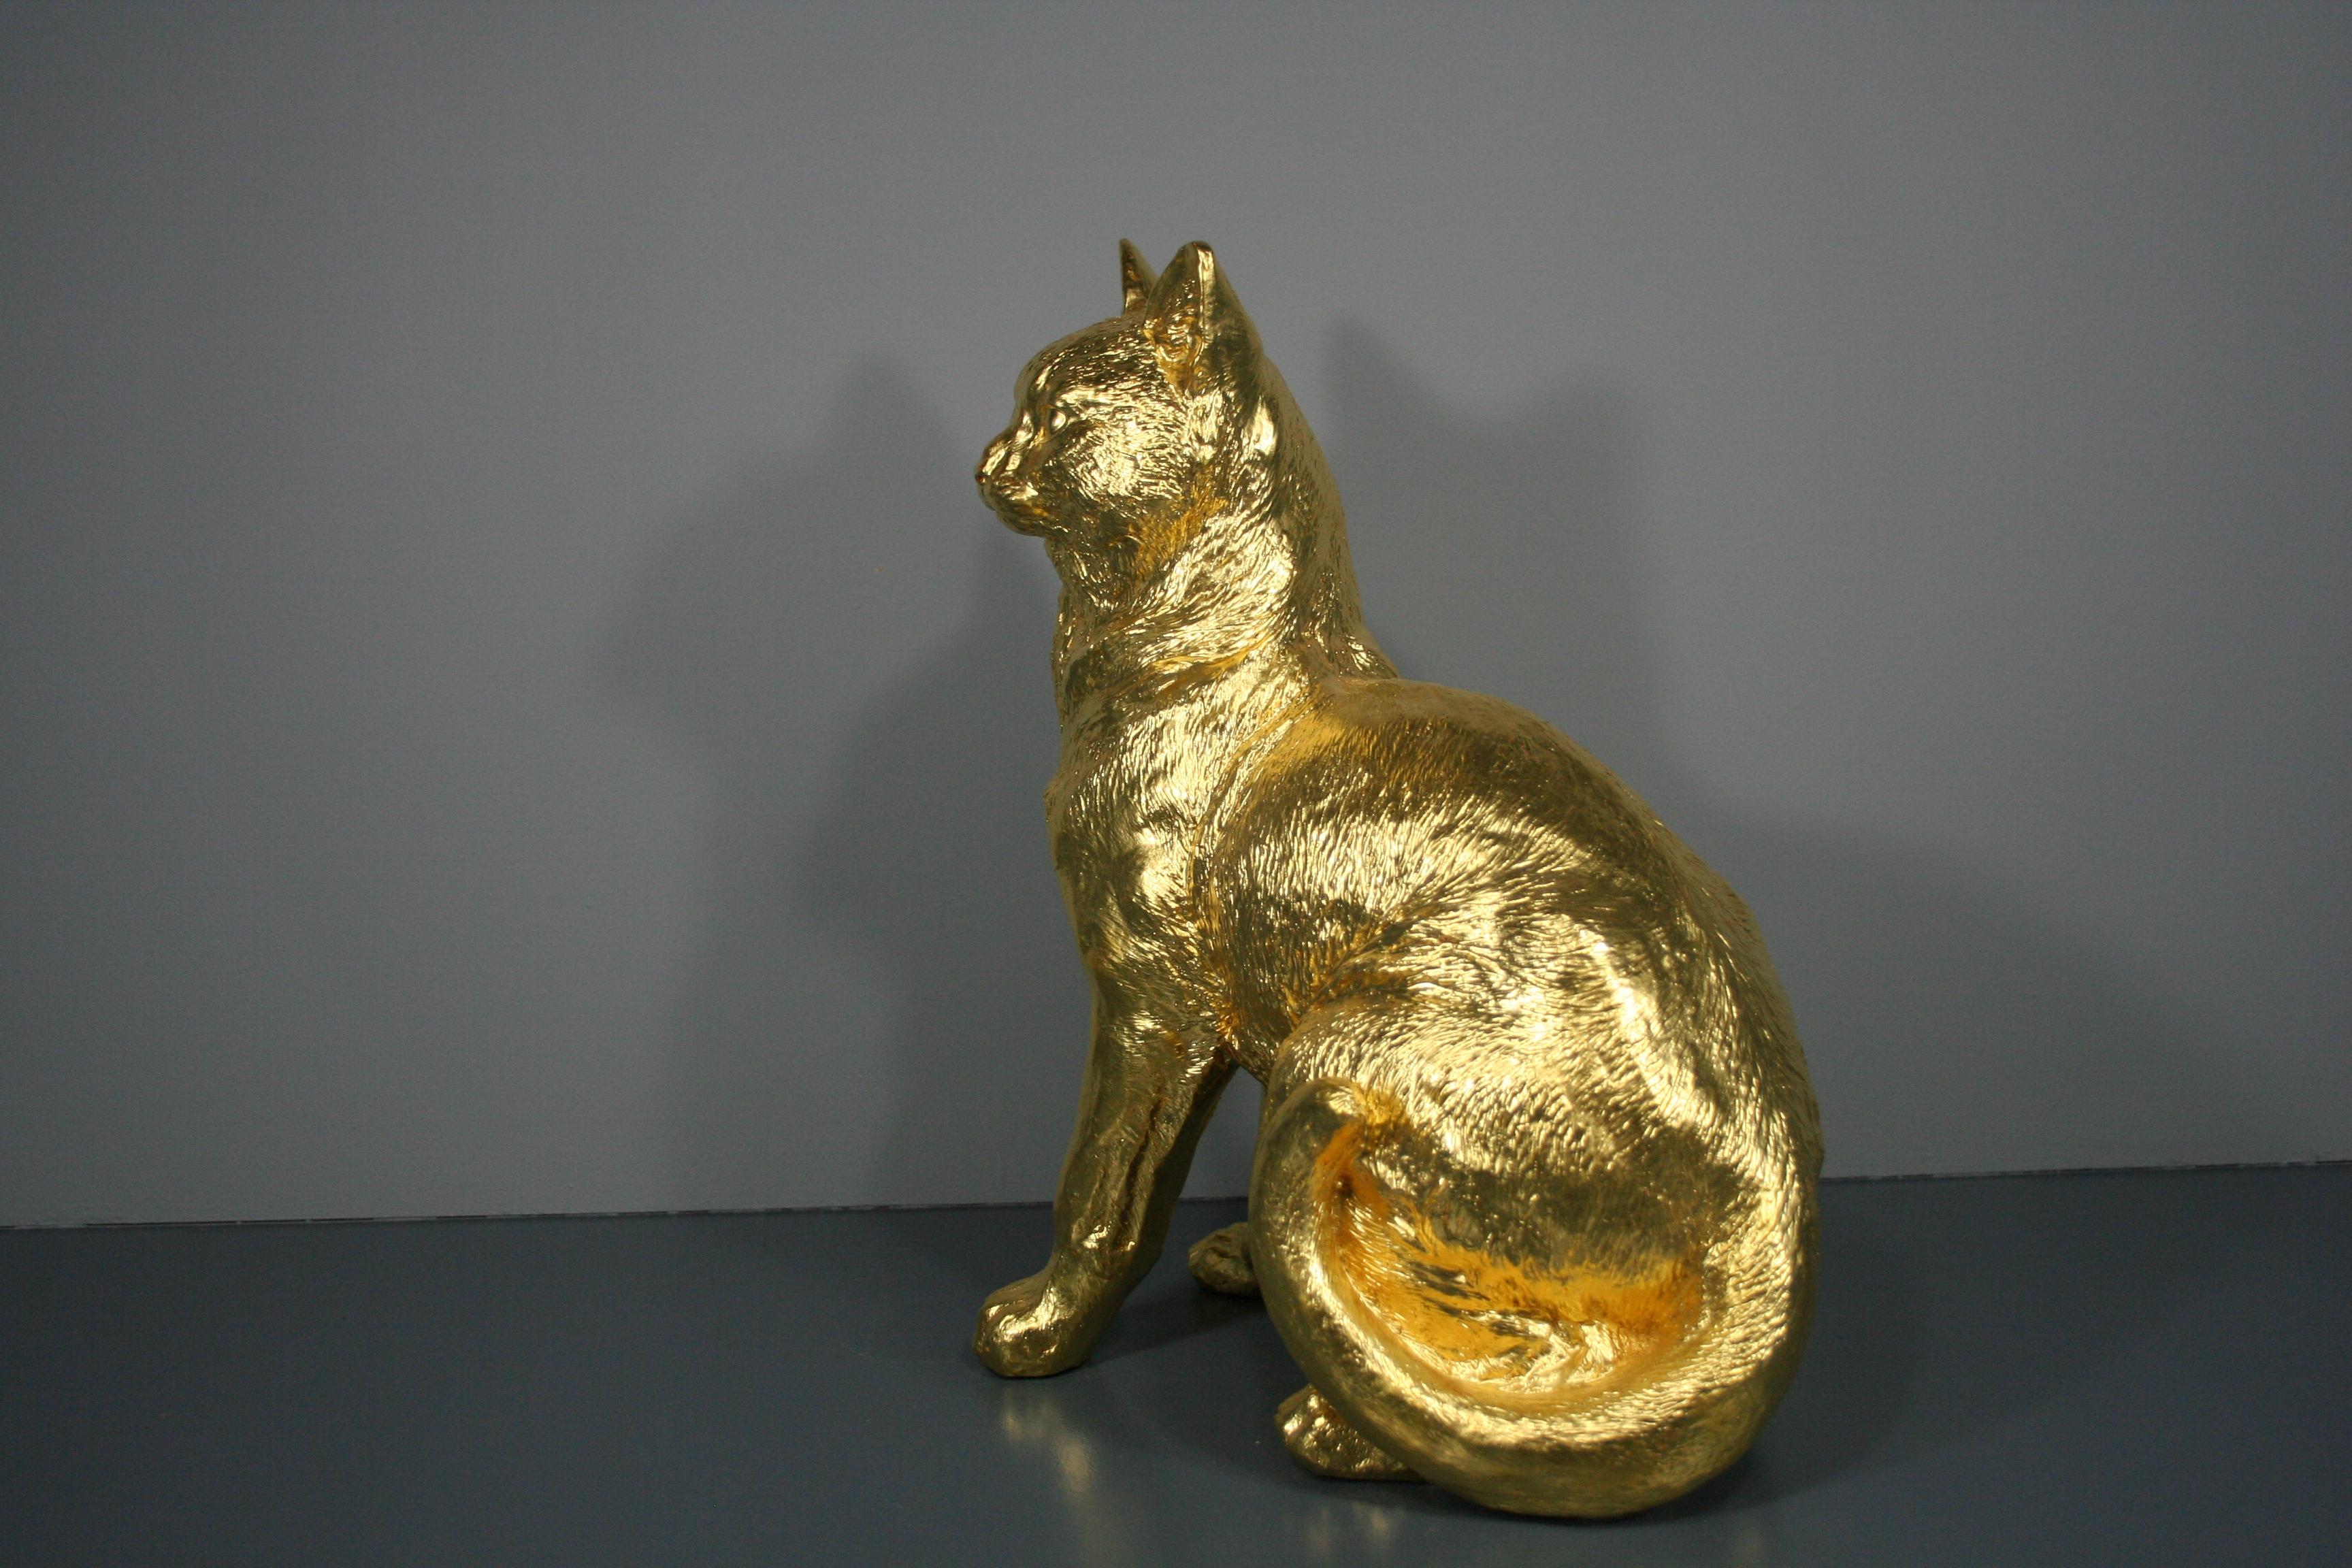 Golden cat pair 24 Karat gilded - Realist Sculpture by Steven